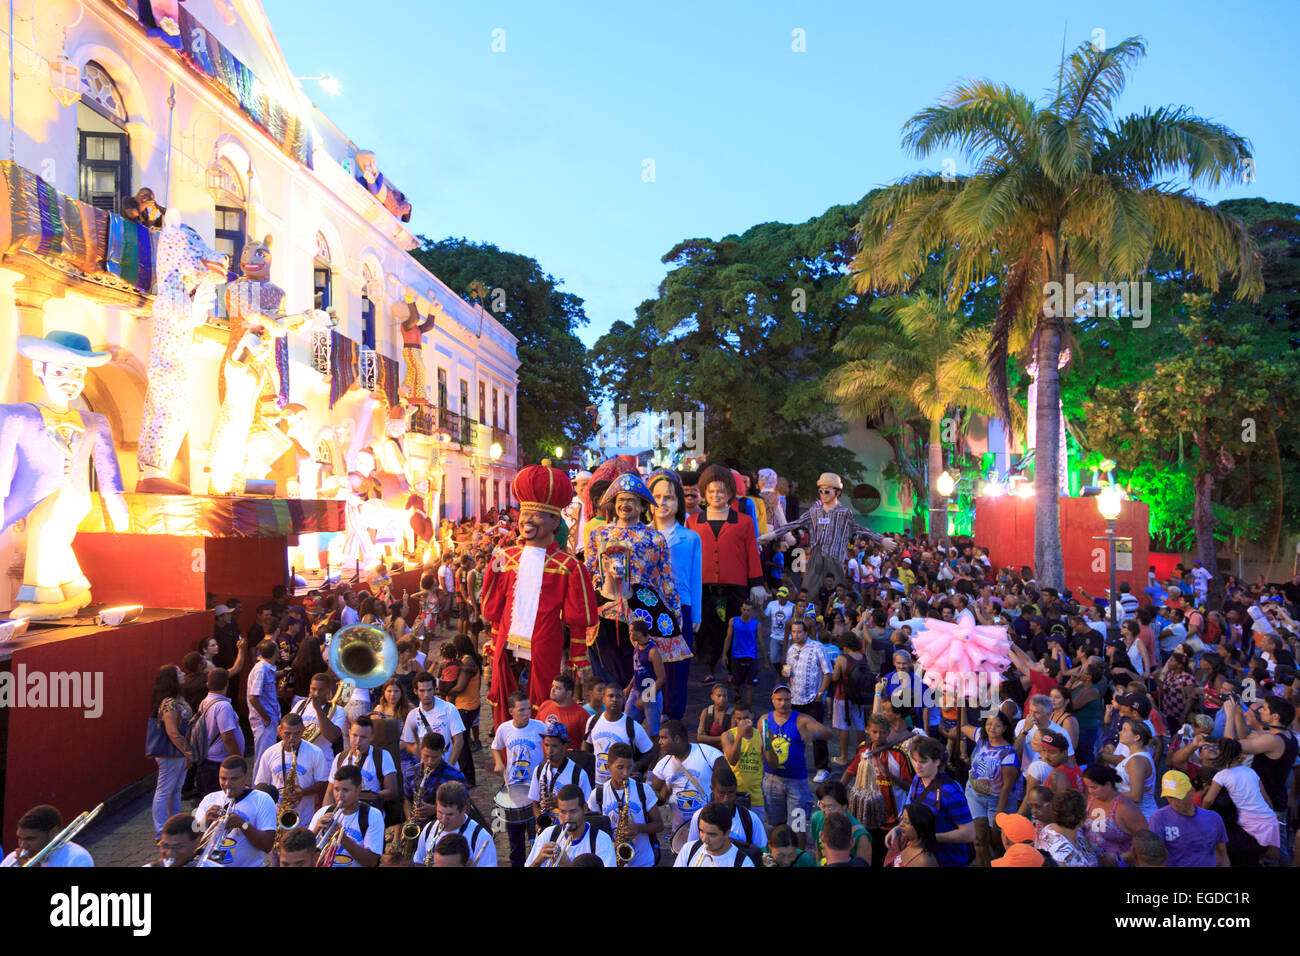 Brésil, Pernambuco Olinda, Vieille Ville (UNESCO Site), des marionnettes géantes durant Carnaval célébration Banque D'Images